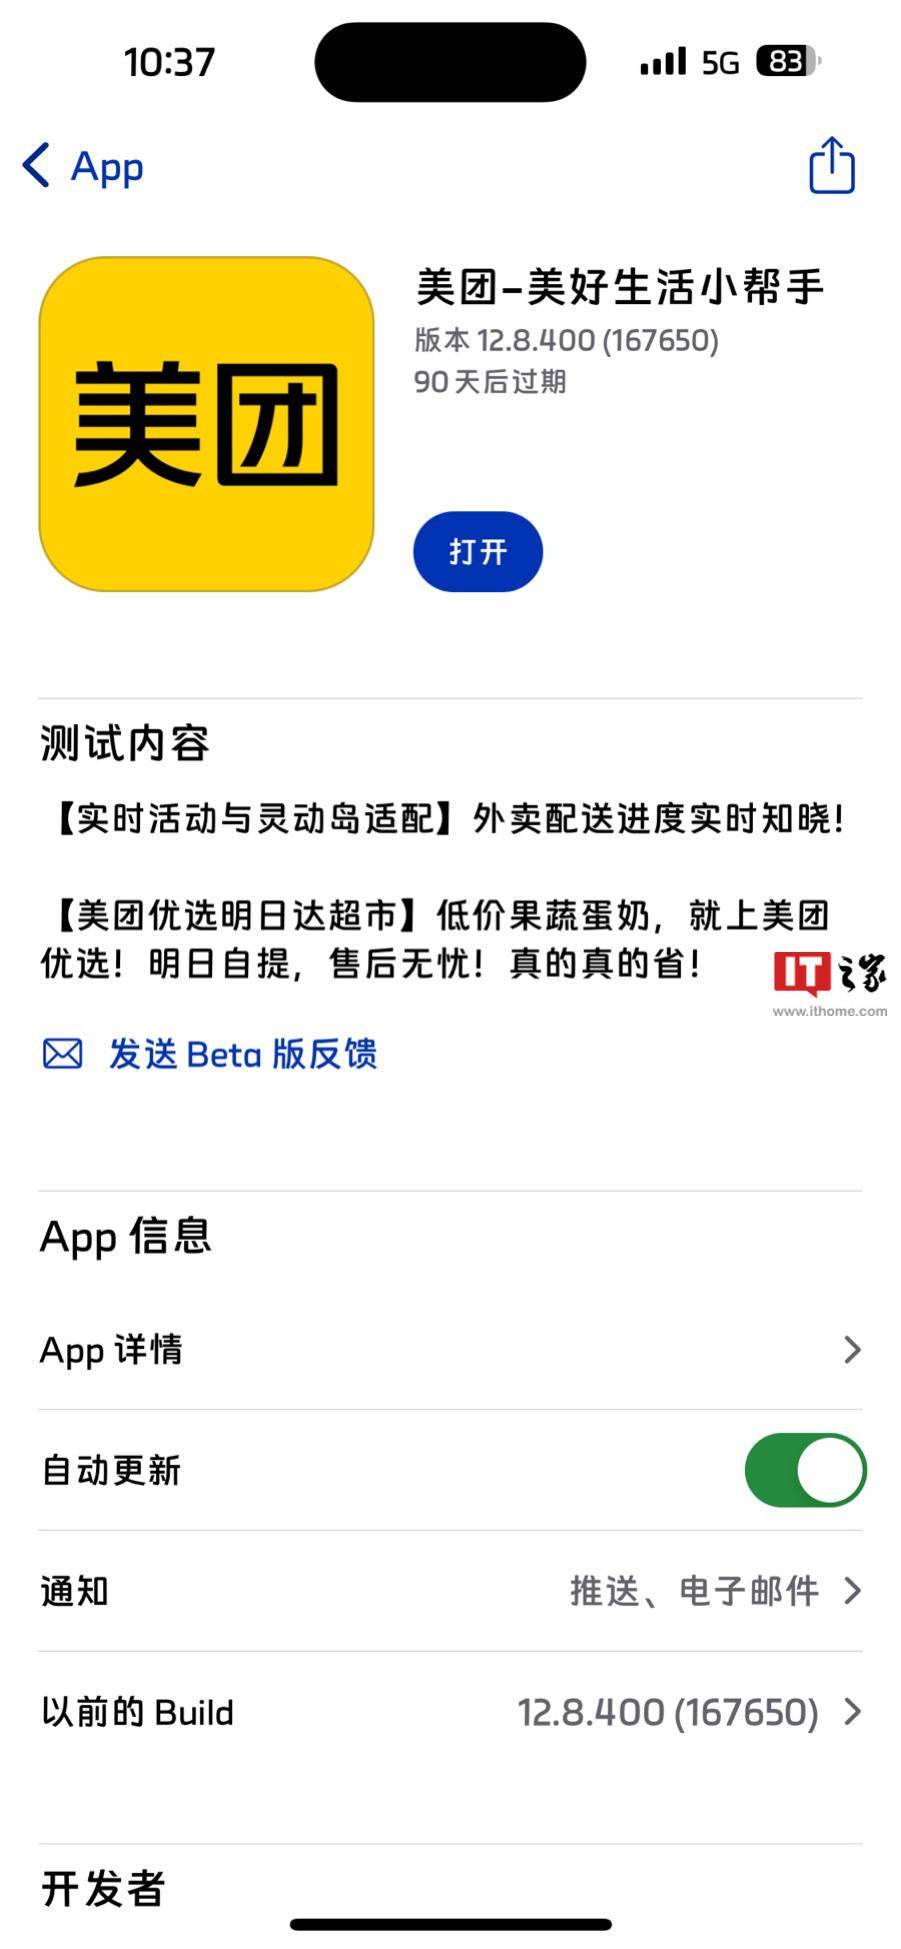 美团iOS版12.8.400测试版发布 支持iOS锁屏&灵动岛查看订单状态等